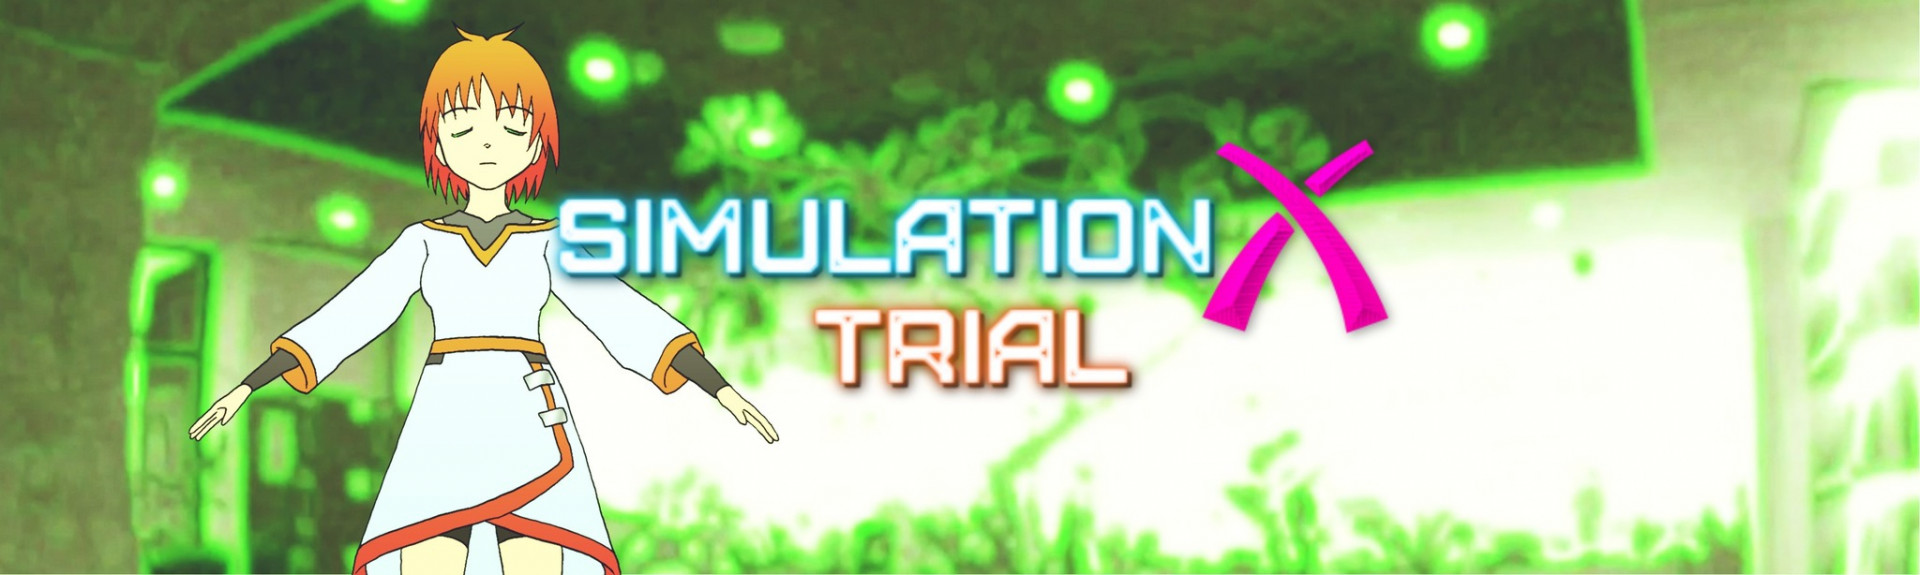 Simulation X trial